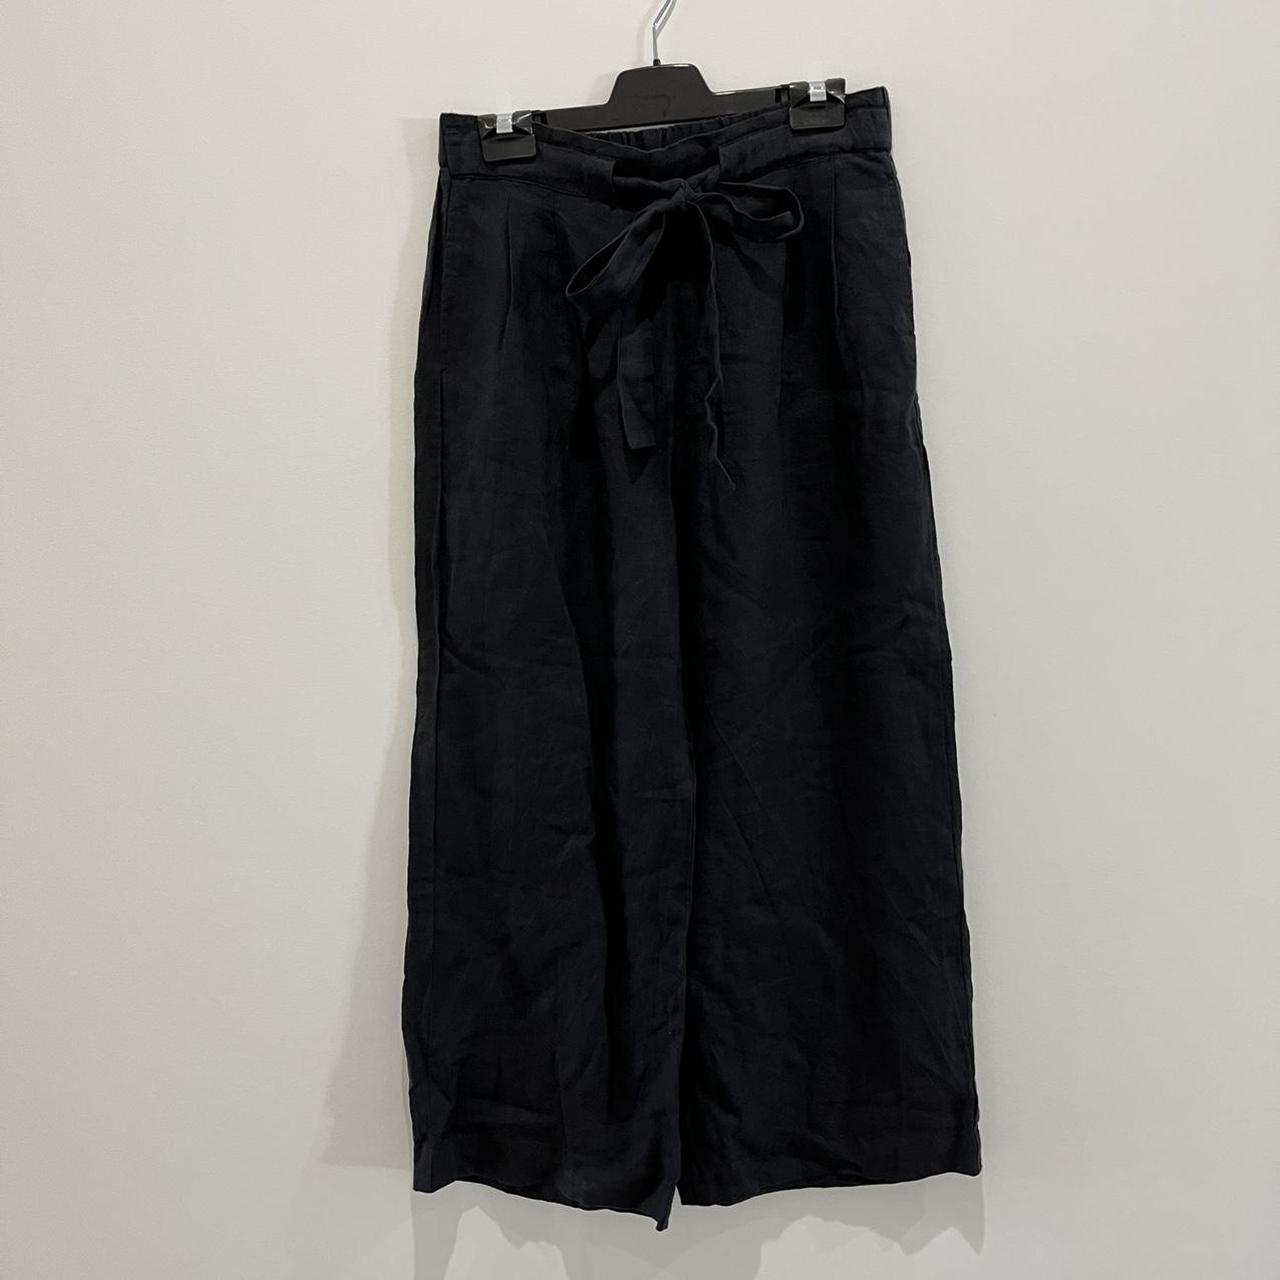 Women's Black Trousers | Depop